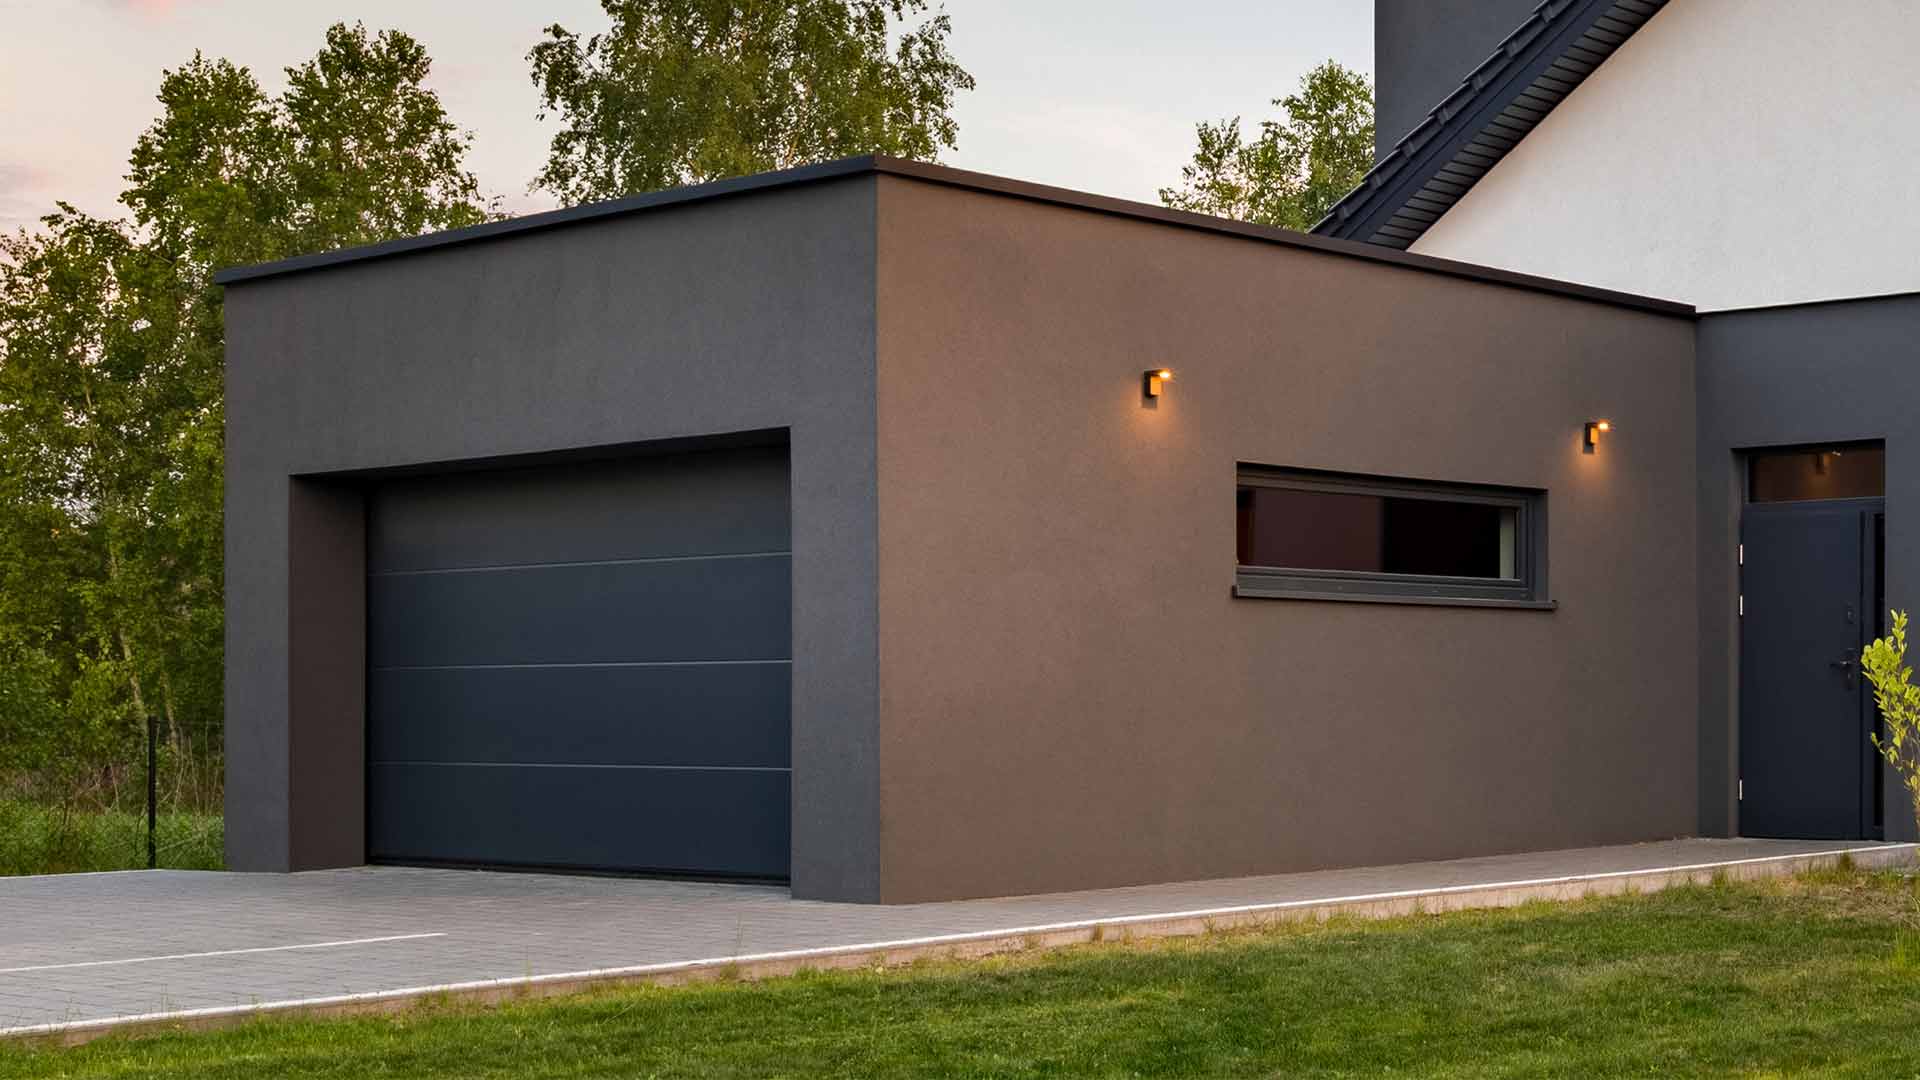 Garagen-Ausstattung und Fertiggaragen-Zubehör - ZAPF-Garagen